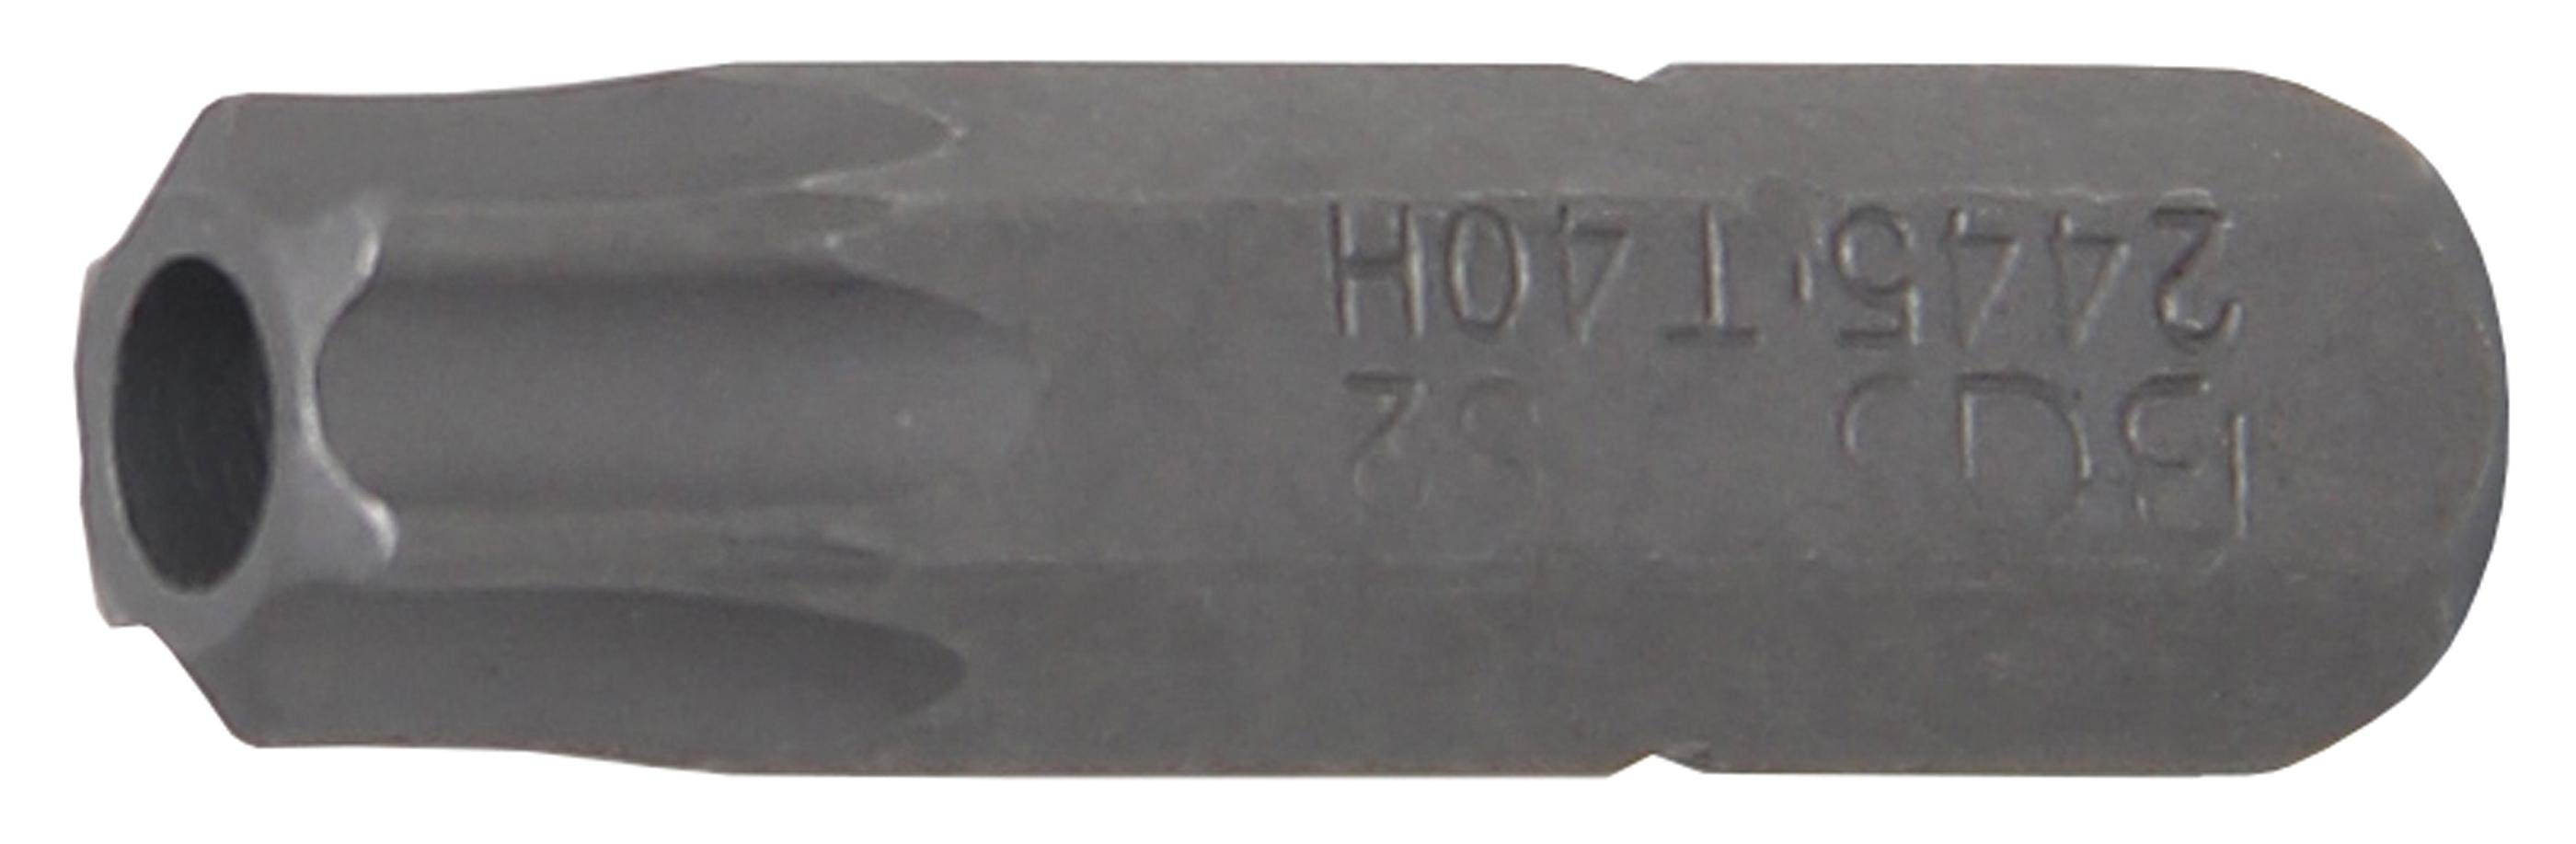 BGS technic Bit-Schraubendreher Bit, T40 (für Bohrung Torx) Außensechskant (1/4), Antrieb mm T-Profil 6,3 mit